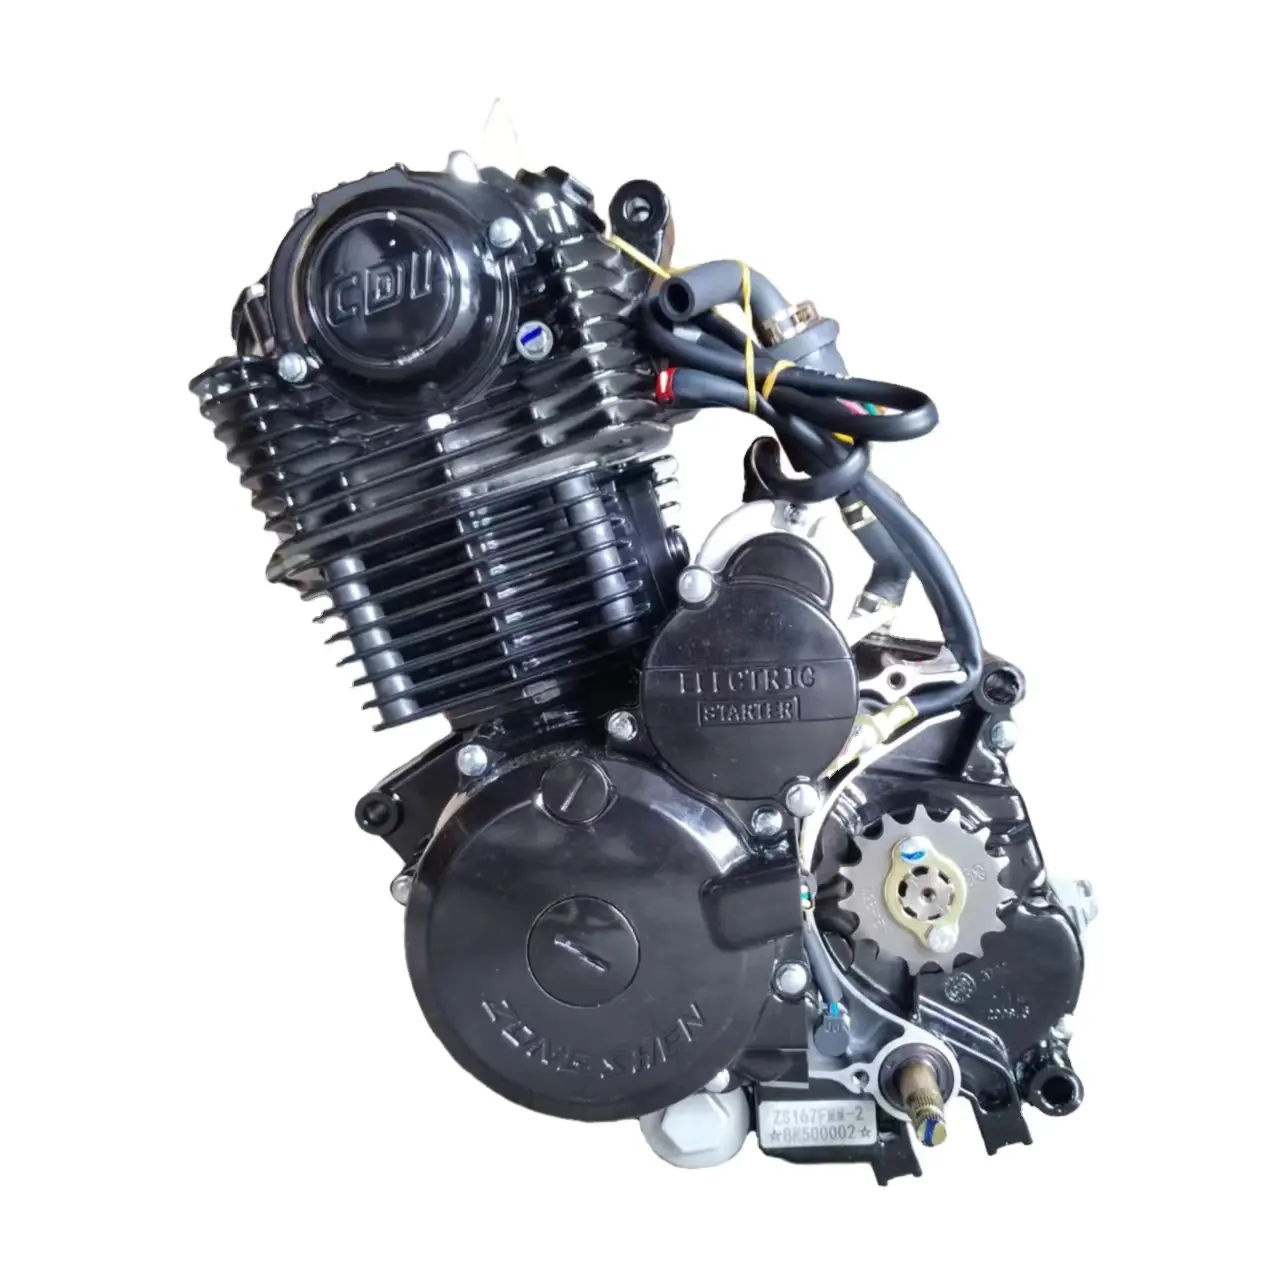 Offroad-Motorrad motoren 5-Gang-4-Takt-Motor zonsen CB250 250 ccm Motorrad motor ZS